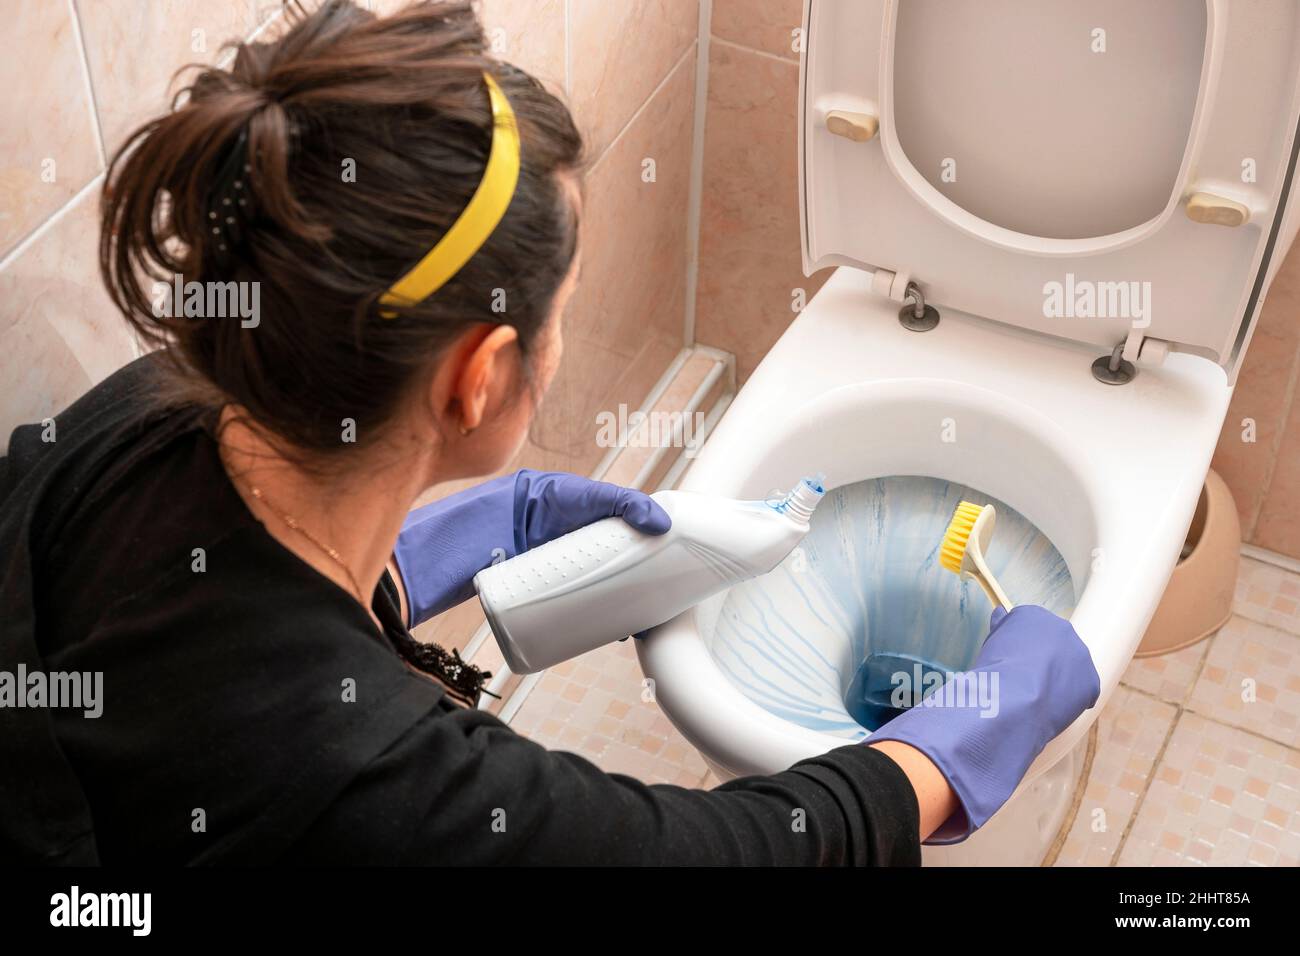 Eine junge Frau reinigt die Toilette im Badezimmer mit Waschmittel, einer  Bürste und Gummihandschuhen. Reinigungs- und Sauberkeitskonzept. Damenhände  reinigen einen Stockfotografie - Alamy